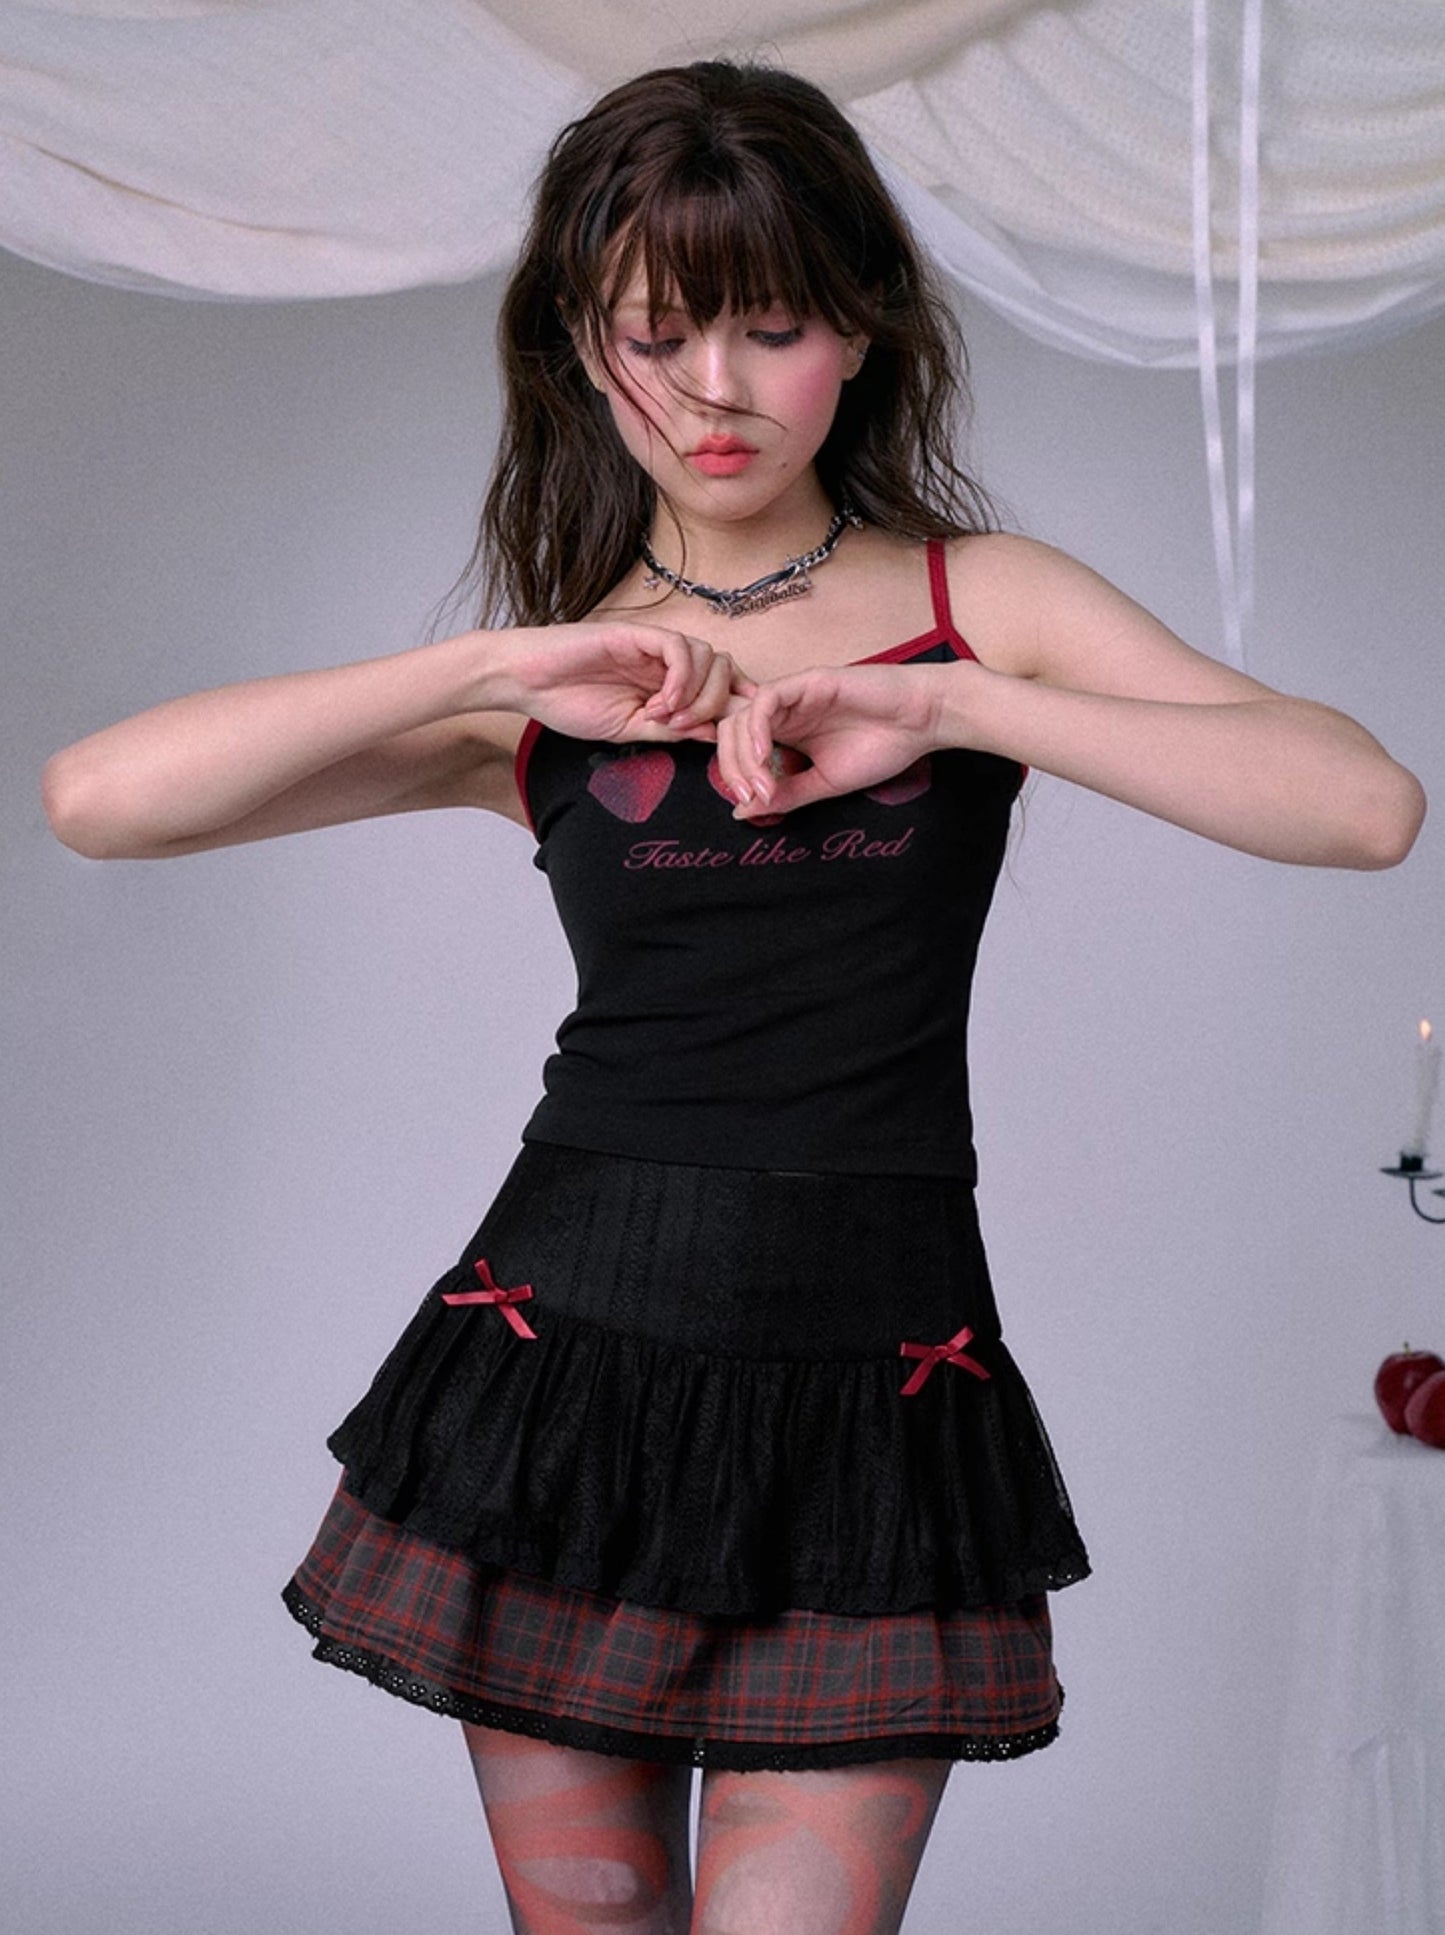 SagiDolls 소녀의 투지 #레드플라워 #아시안걸 다크 레이스 레드 체크무늬 스커트 쇼트 스커트 핫펑크